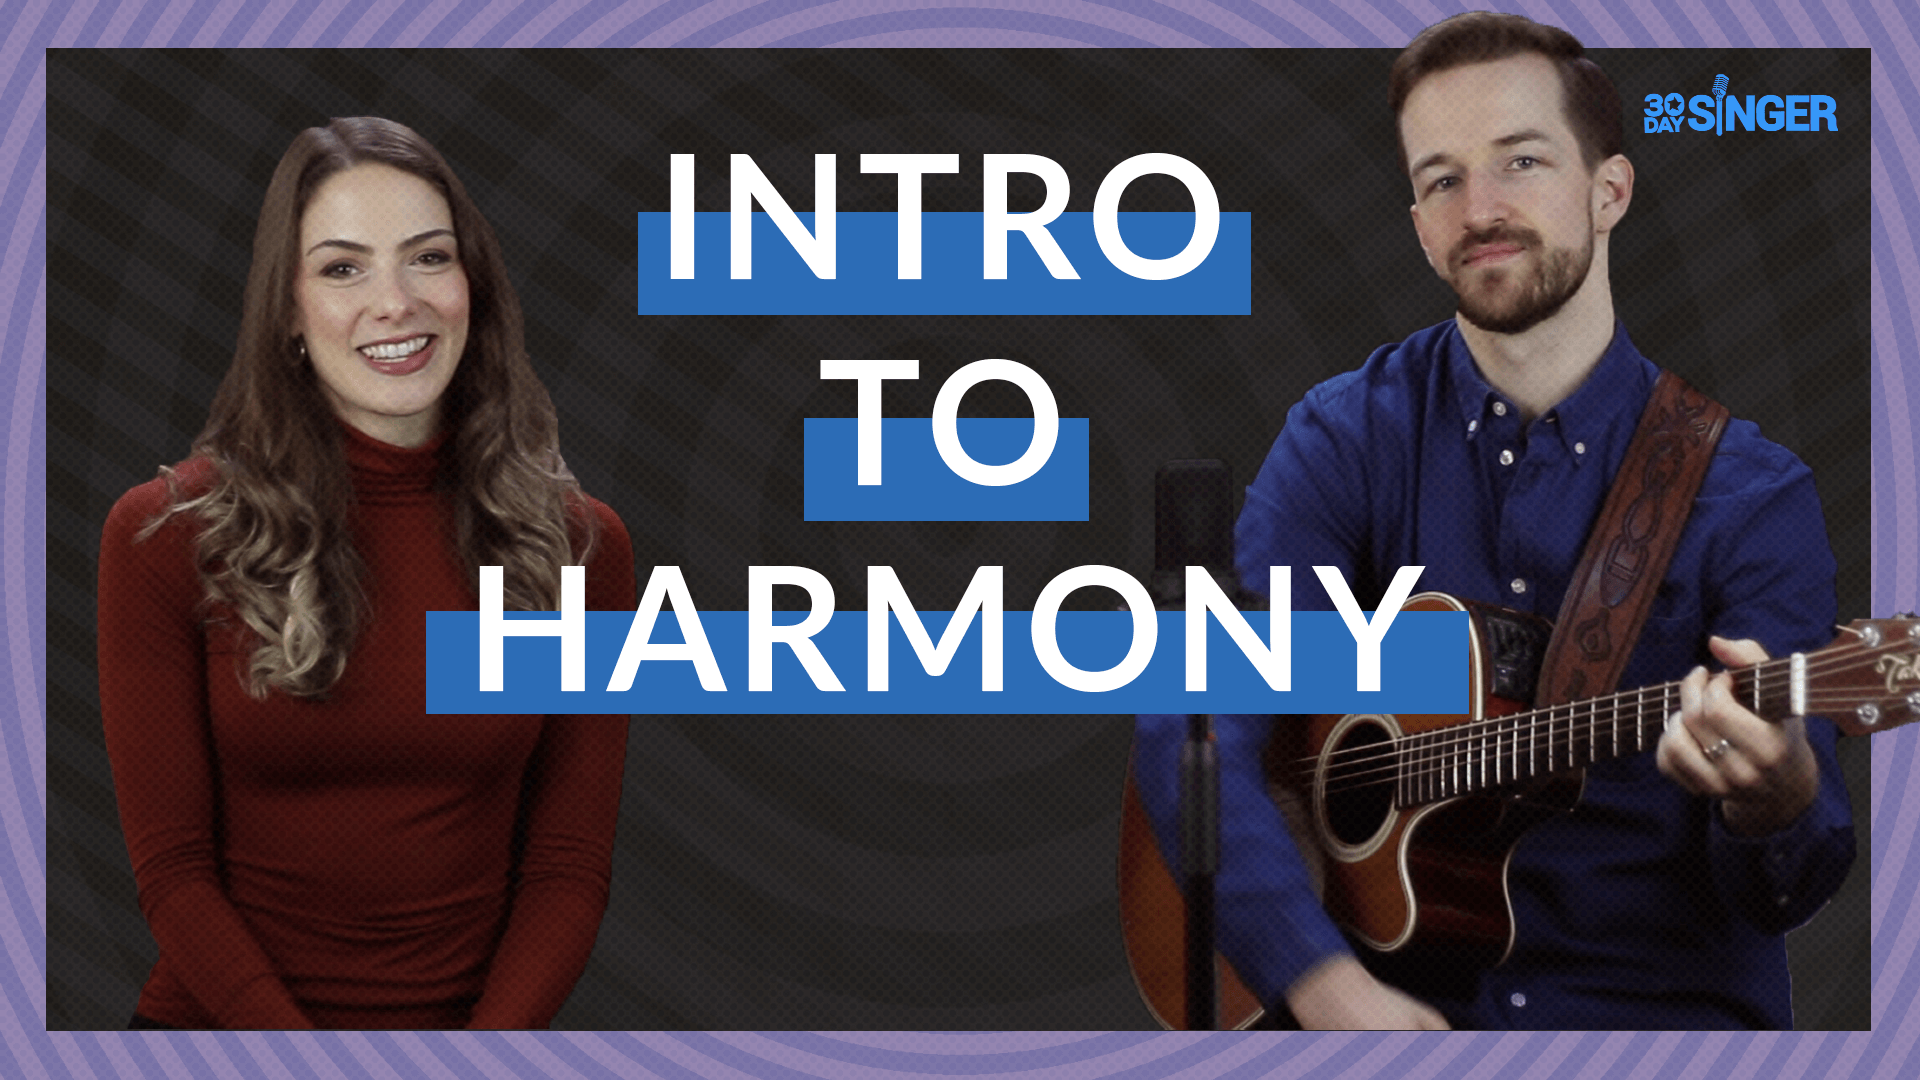 Introduction to Harmonizing